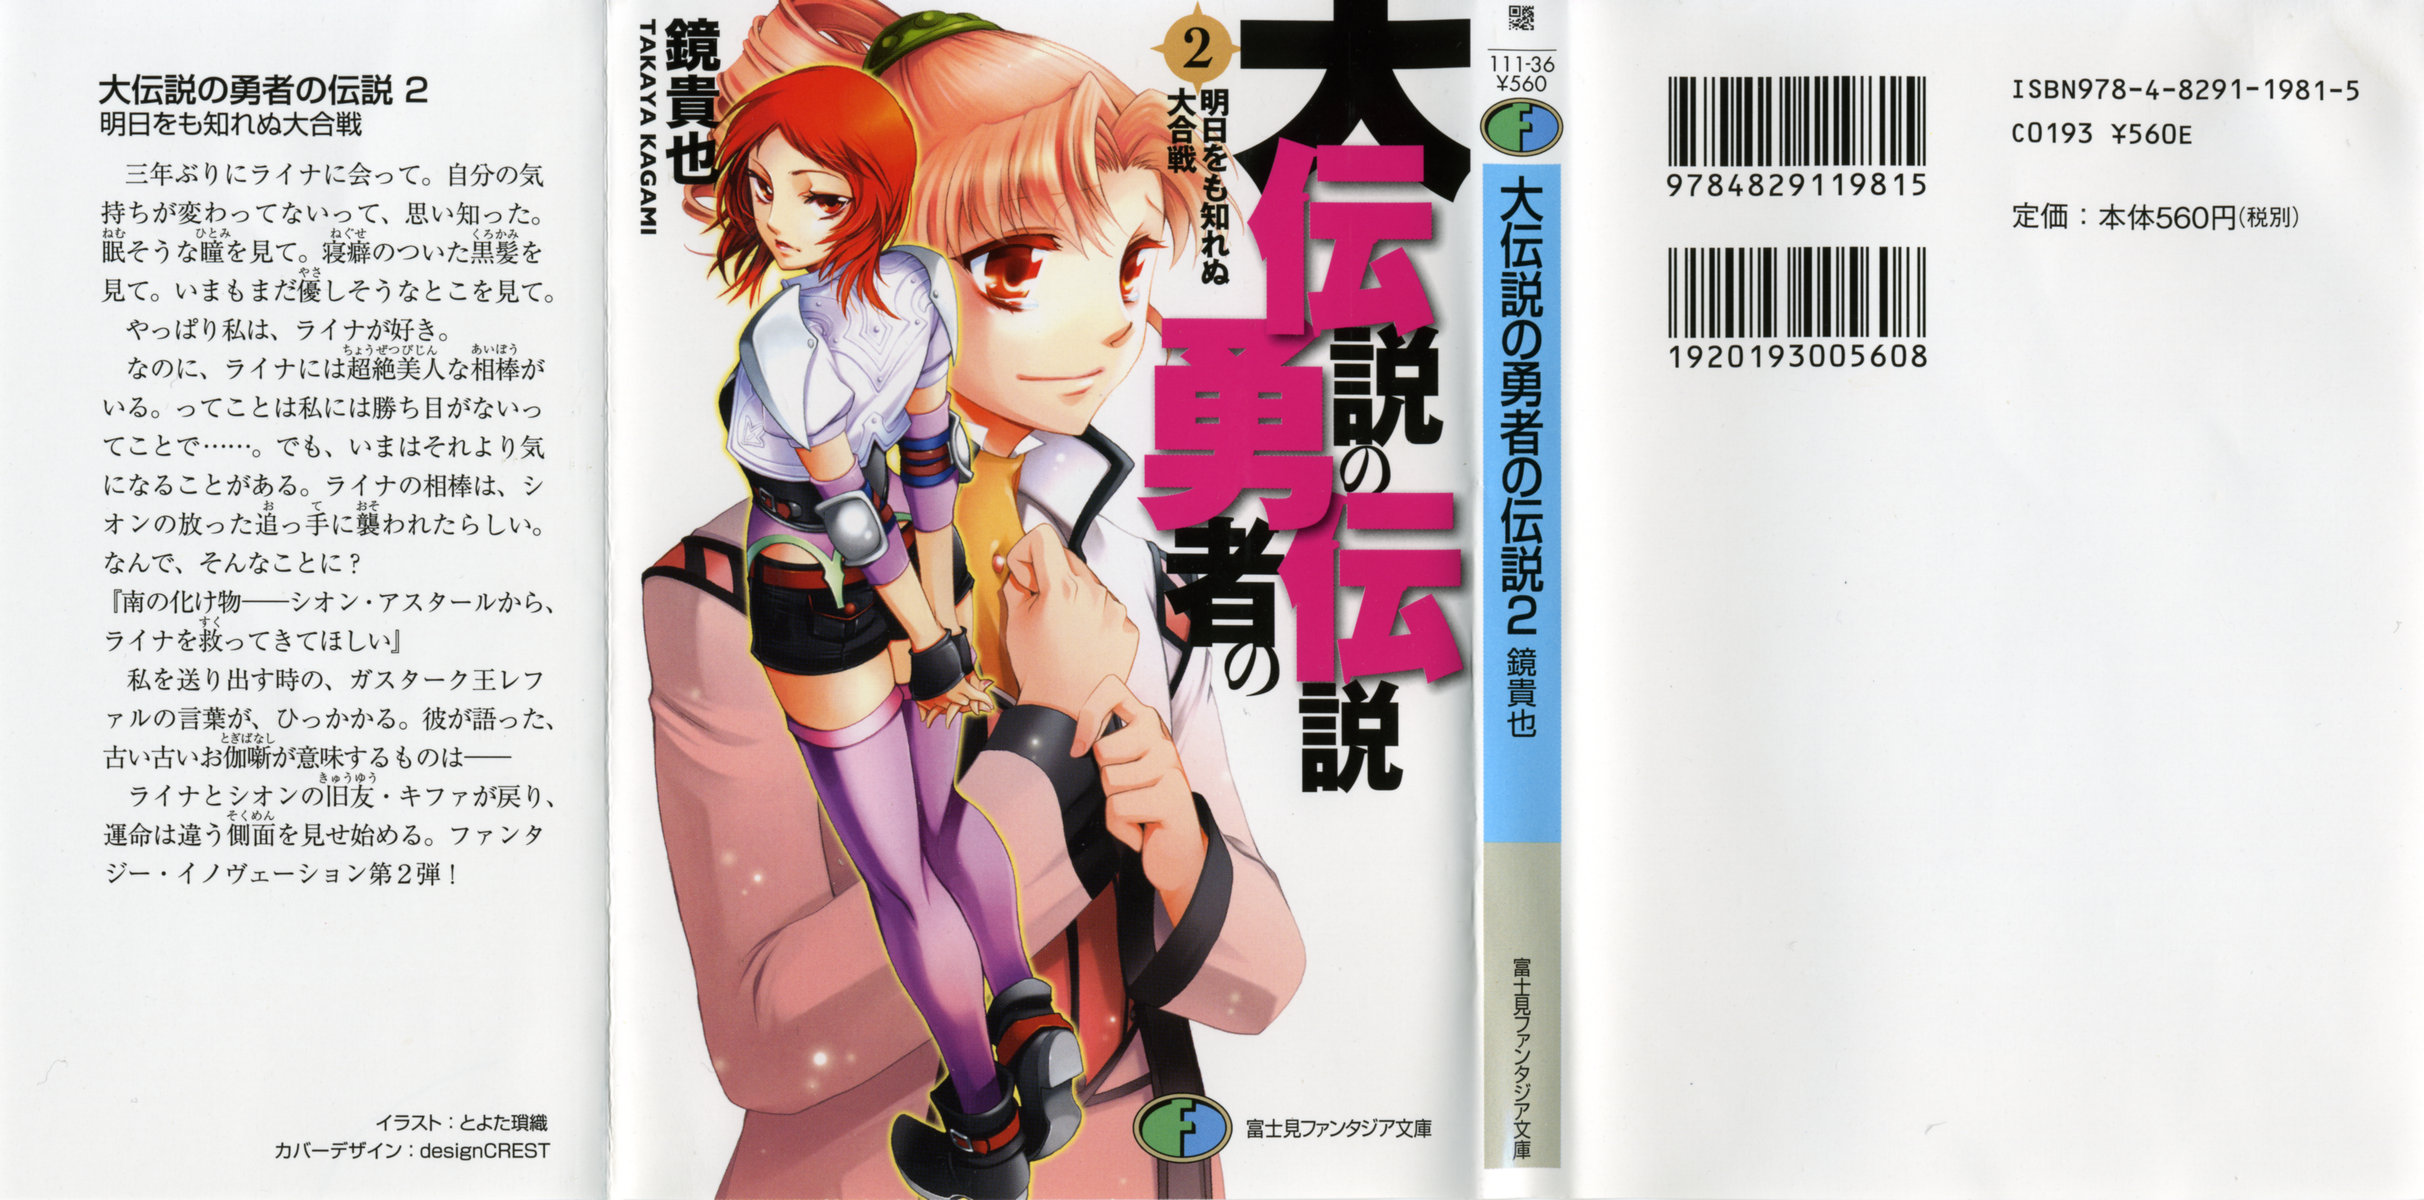 Dai Densetsu no Yuusha no Densetsu[Spoilers – Novels] Parte 01